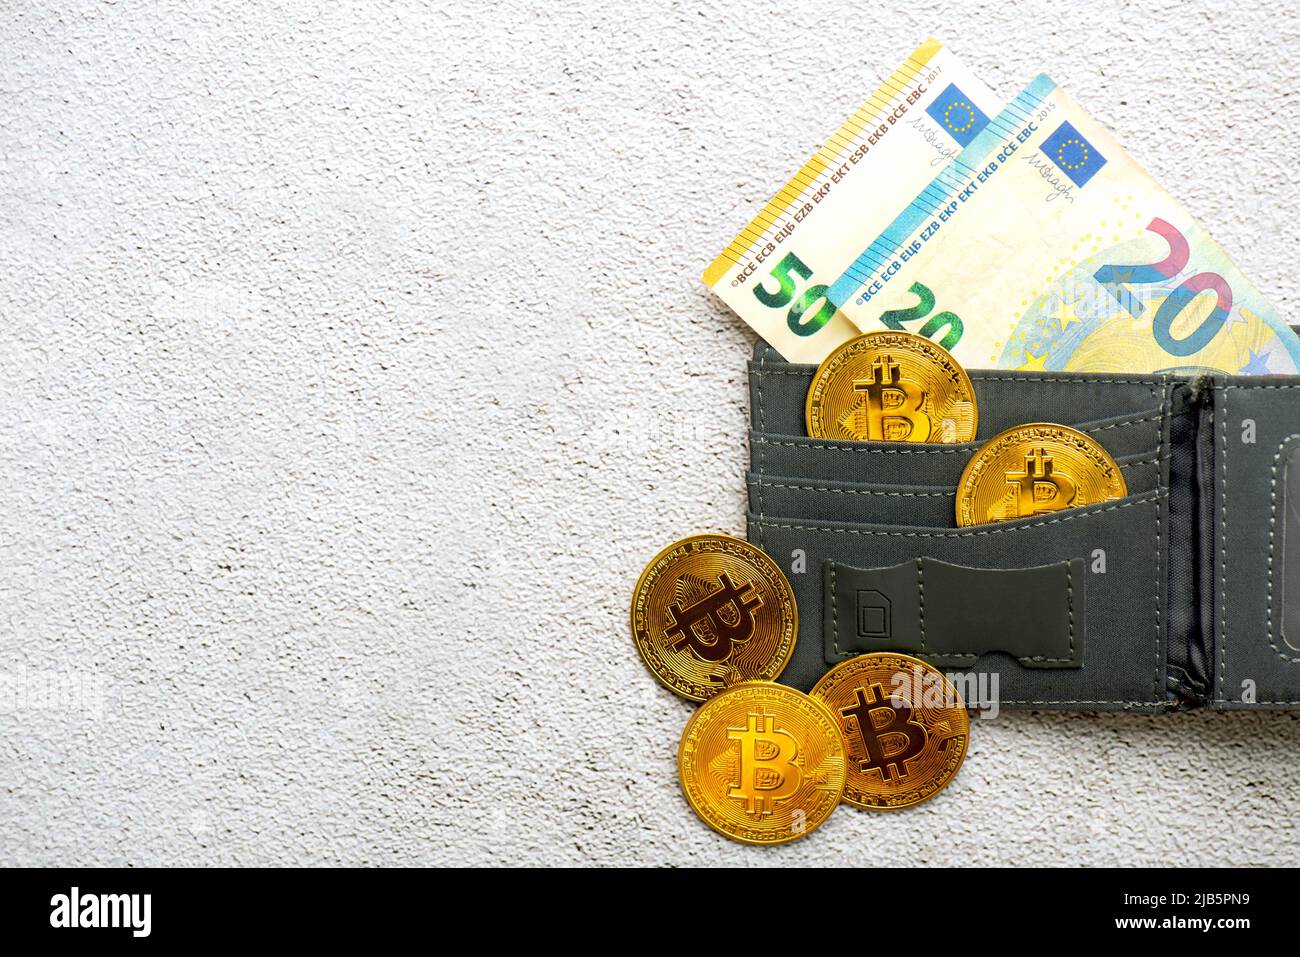 Vue de dessus des pièces de monnaie en bitcoin dorées dans un portefeuille avec des billets en euros sur le sol. Crypto-monnaie électronique Banque D'Images